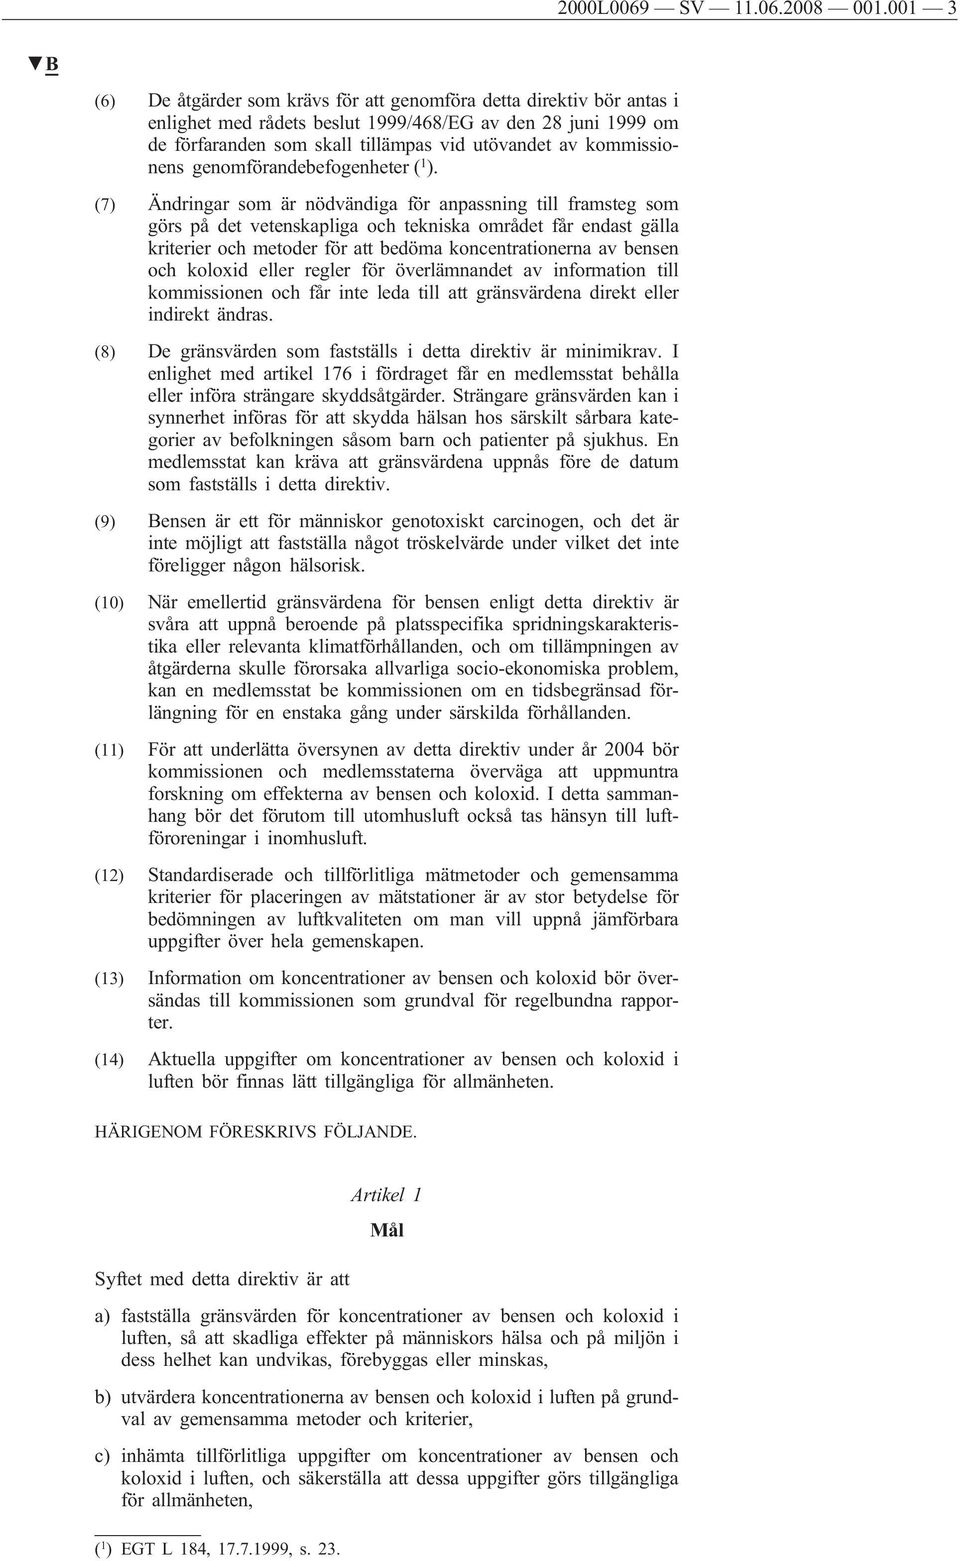 kommissionens genomförandebefogenheter ( 1 ).